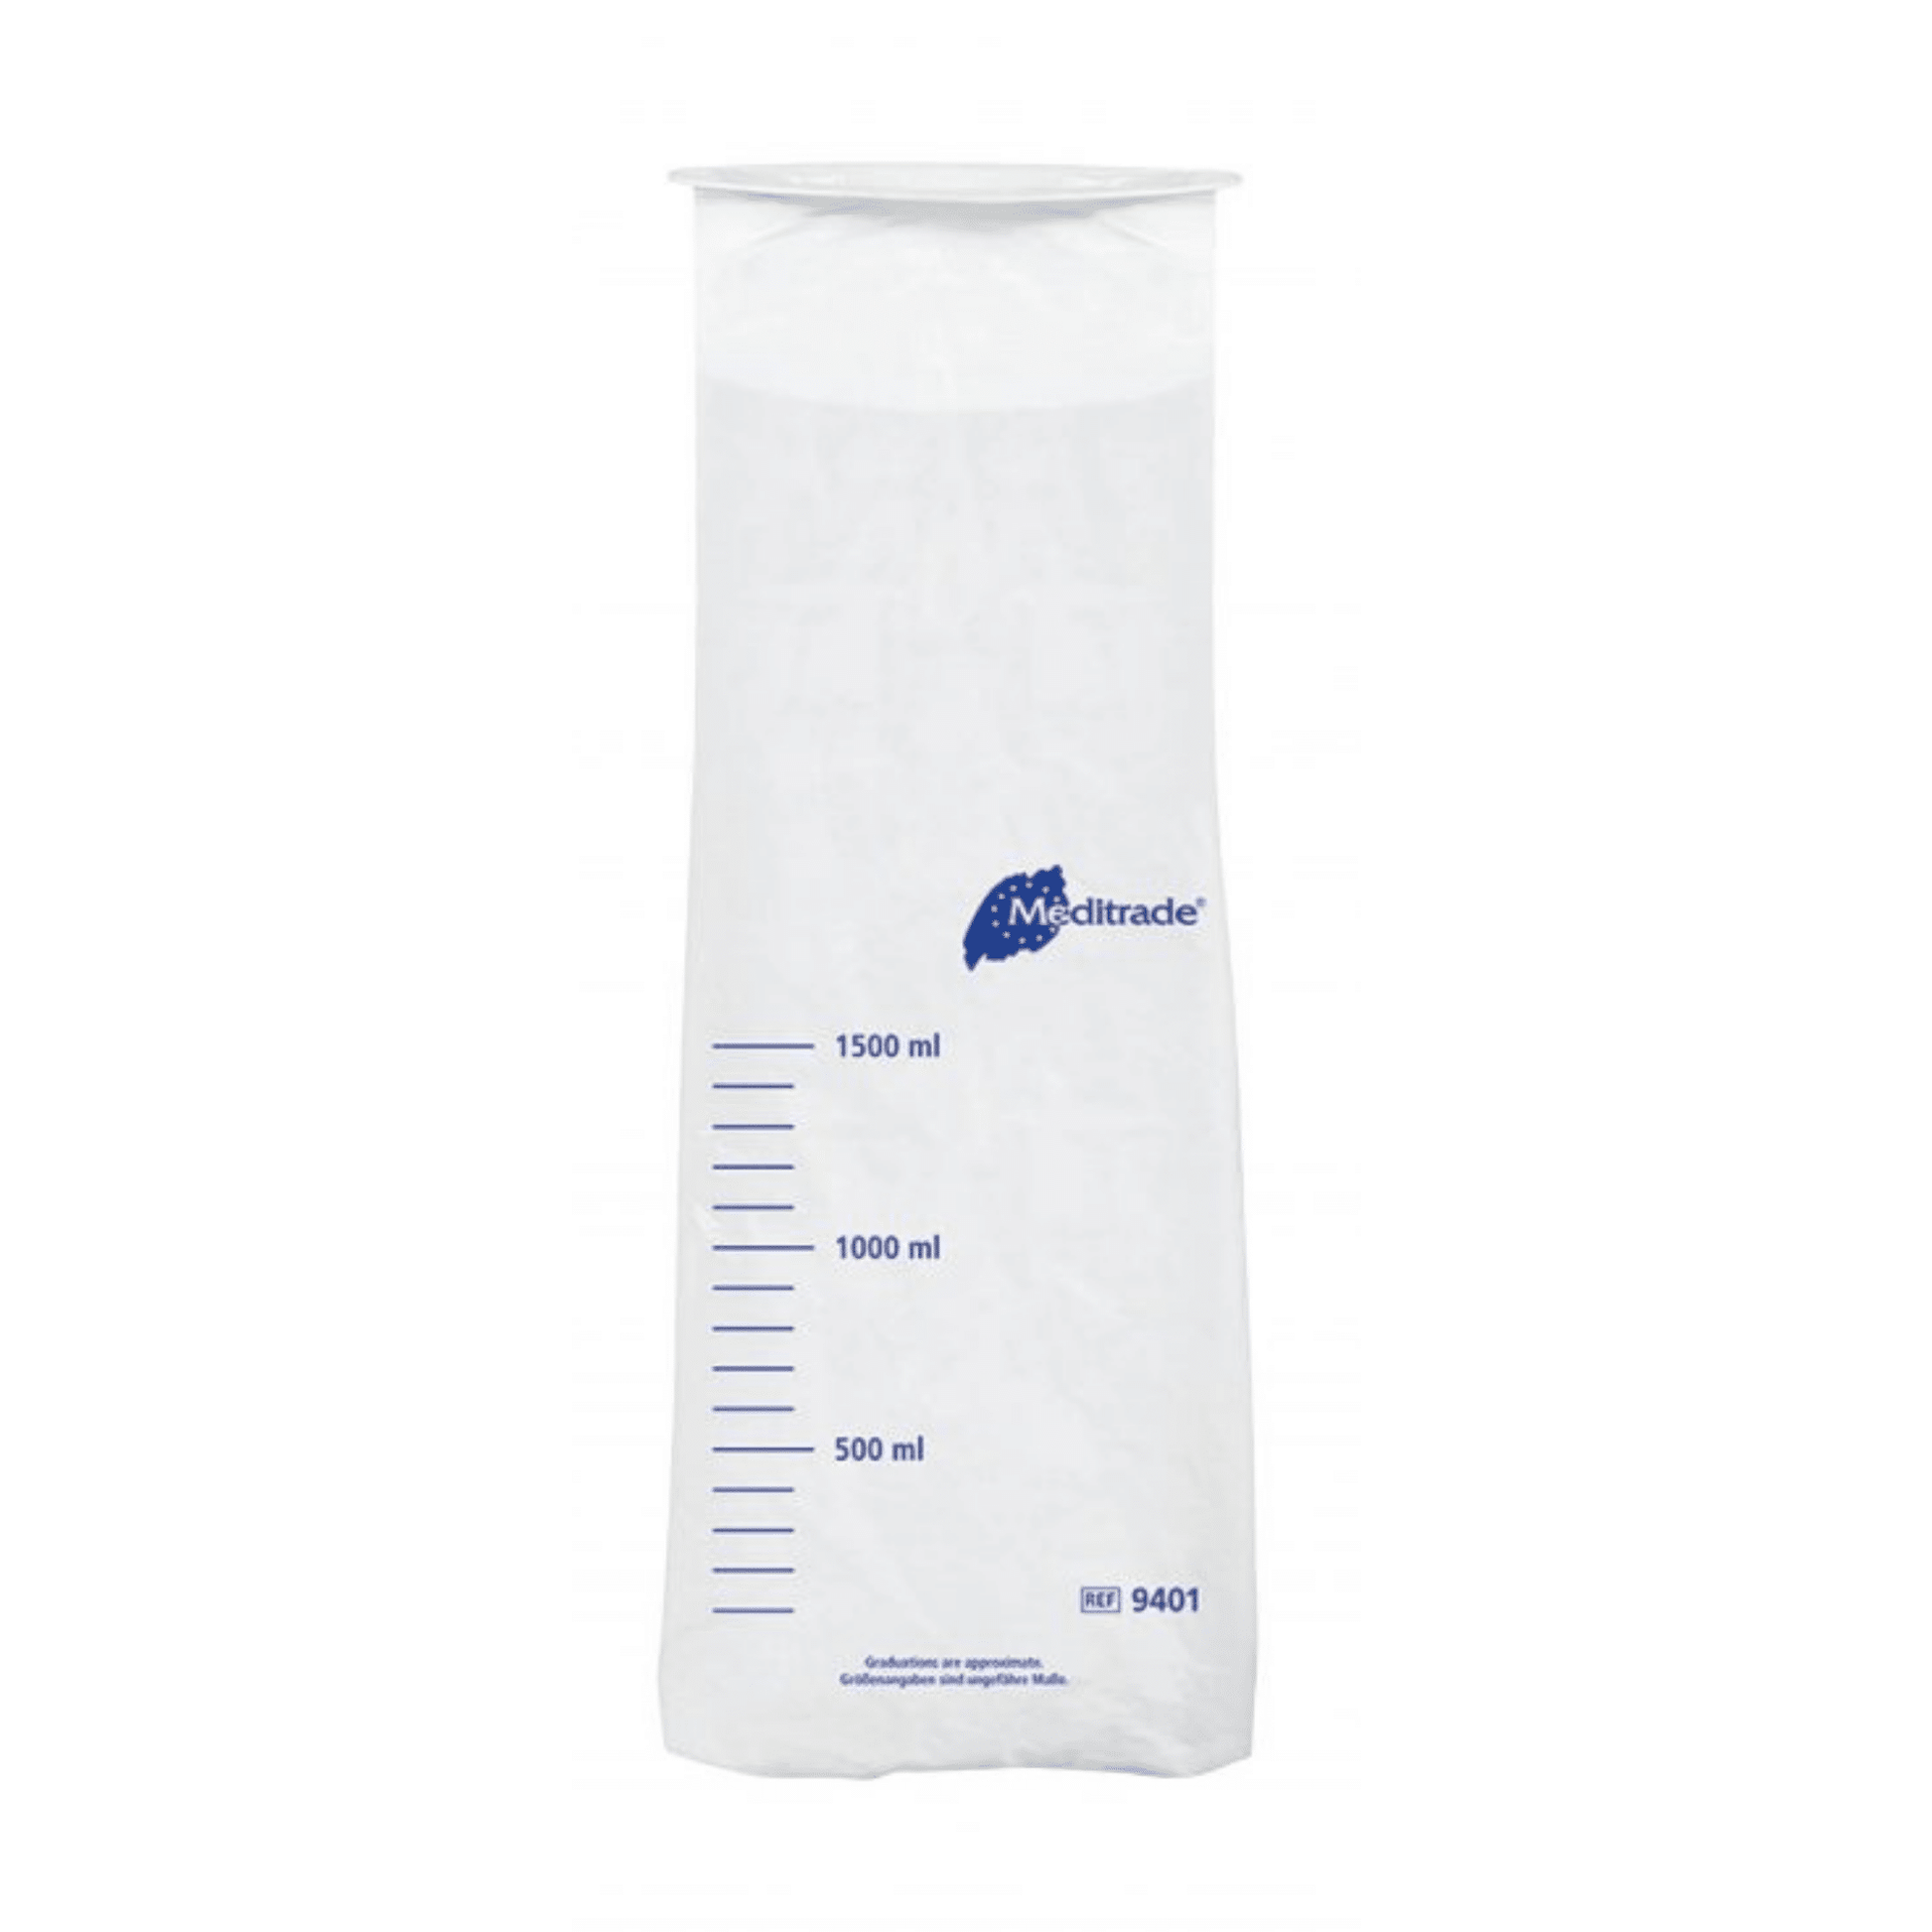 Ein durchsichtiges, graduiertes Kunststoffmaß aus Polyethylen mit blauen Messmarkierungen und blauem „Meditrade GmbH“-Logo, das Volumenkapazitäten von 500 ml bis 1500 ml anzeigt.